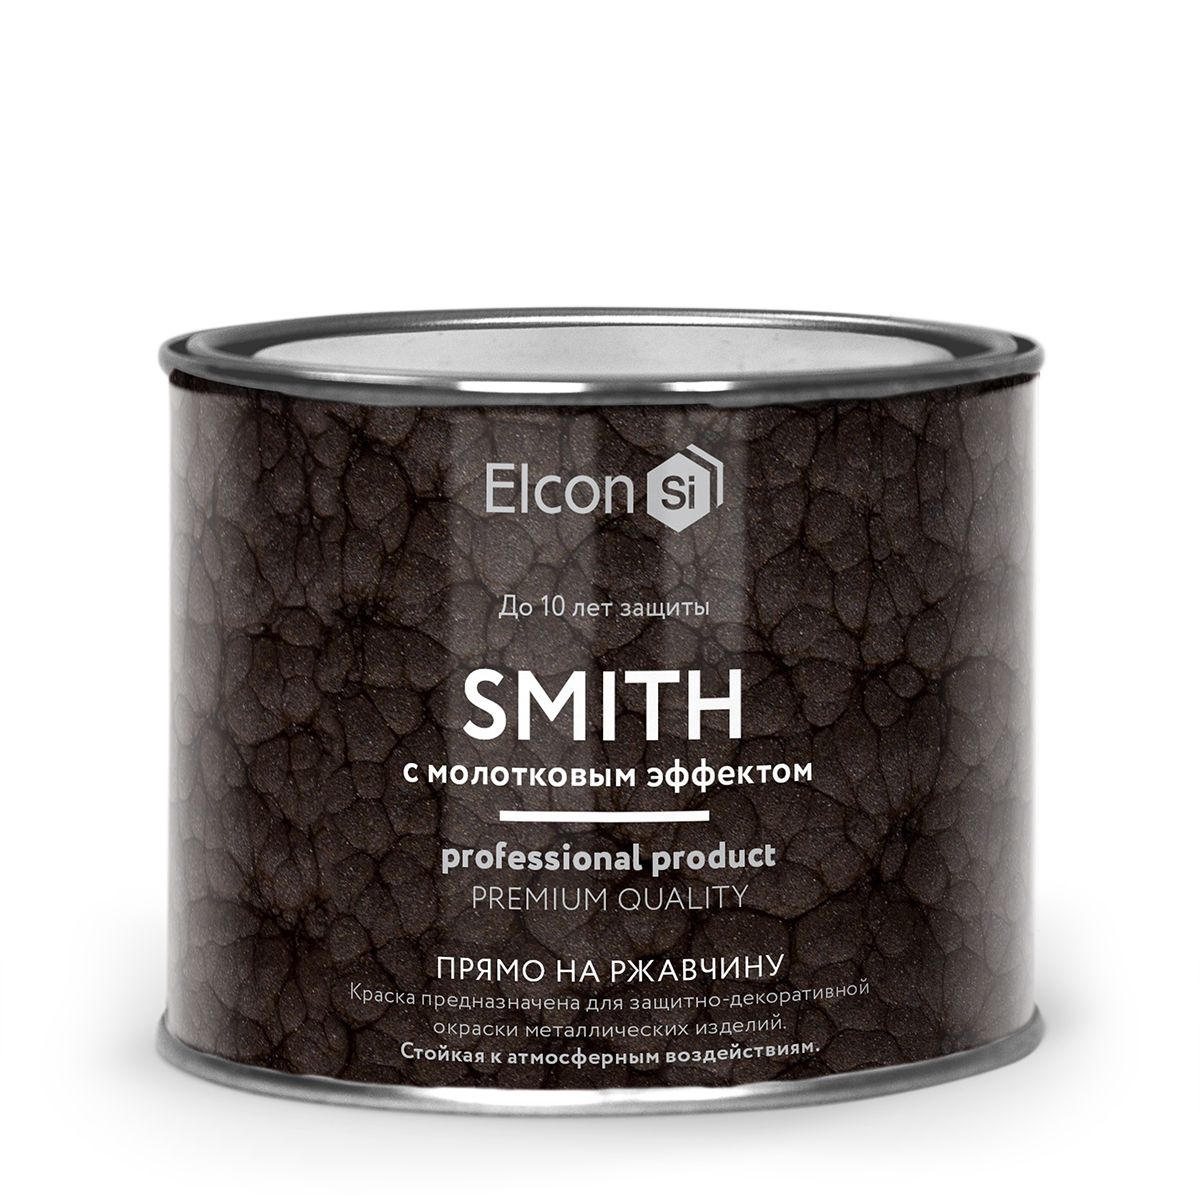 Краска Elcon Smith кузнечная, с молотковым эффектом, серебро, 400 г краска elcon smith кузнечная с молотковым эффектом серебро 400 г